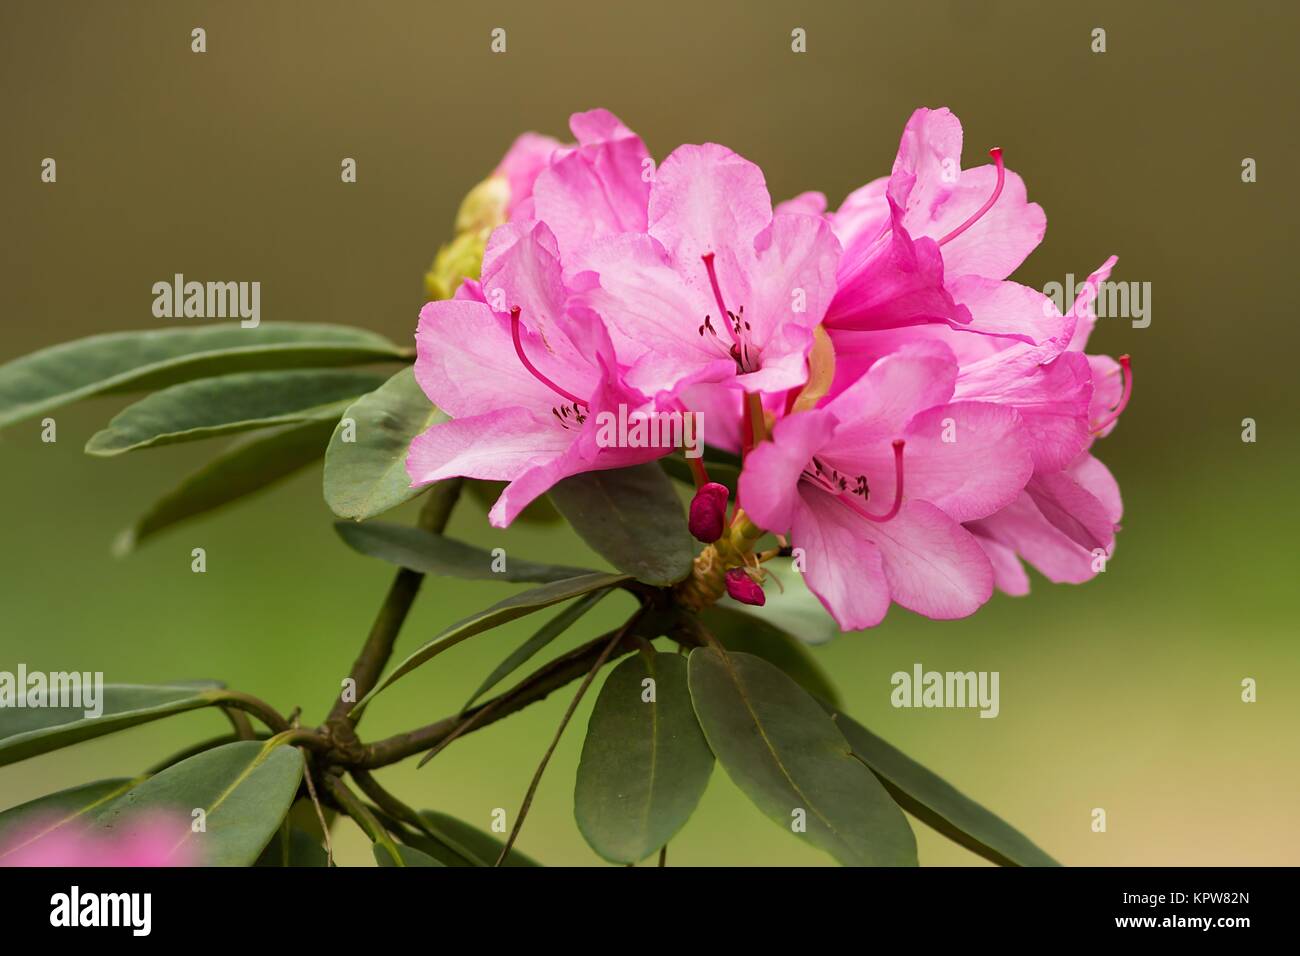 Rosa fiori di rododendro / rosa fiori di rododendro Foto Stock